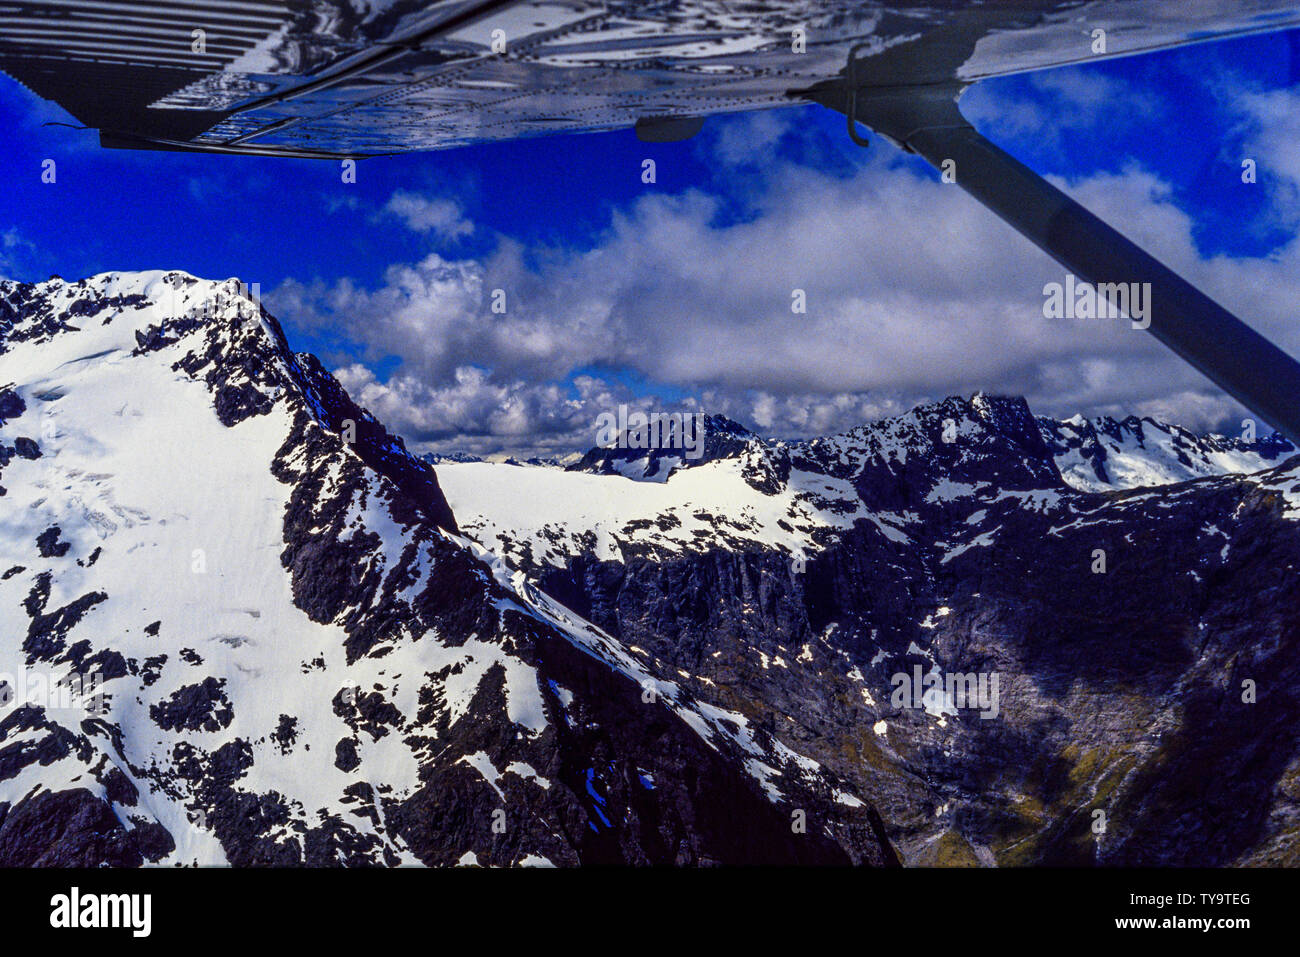 Nueva Zelanda, Isla Sur. Volando sobre los Alpes del Sur / Kā Tiritiri o te Moana, una cordillera que se extiende por gran parte de la longitud de Nueva Zelanda" Foto de stock